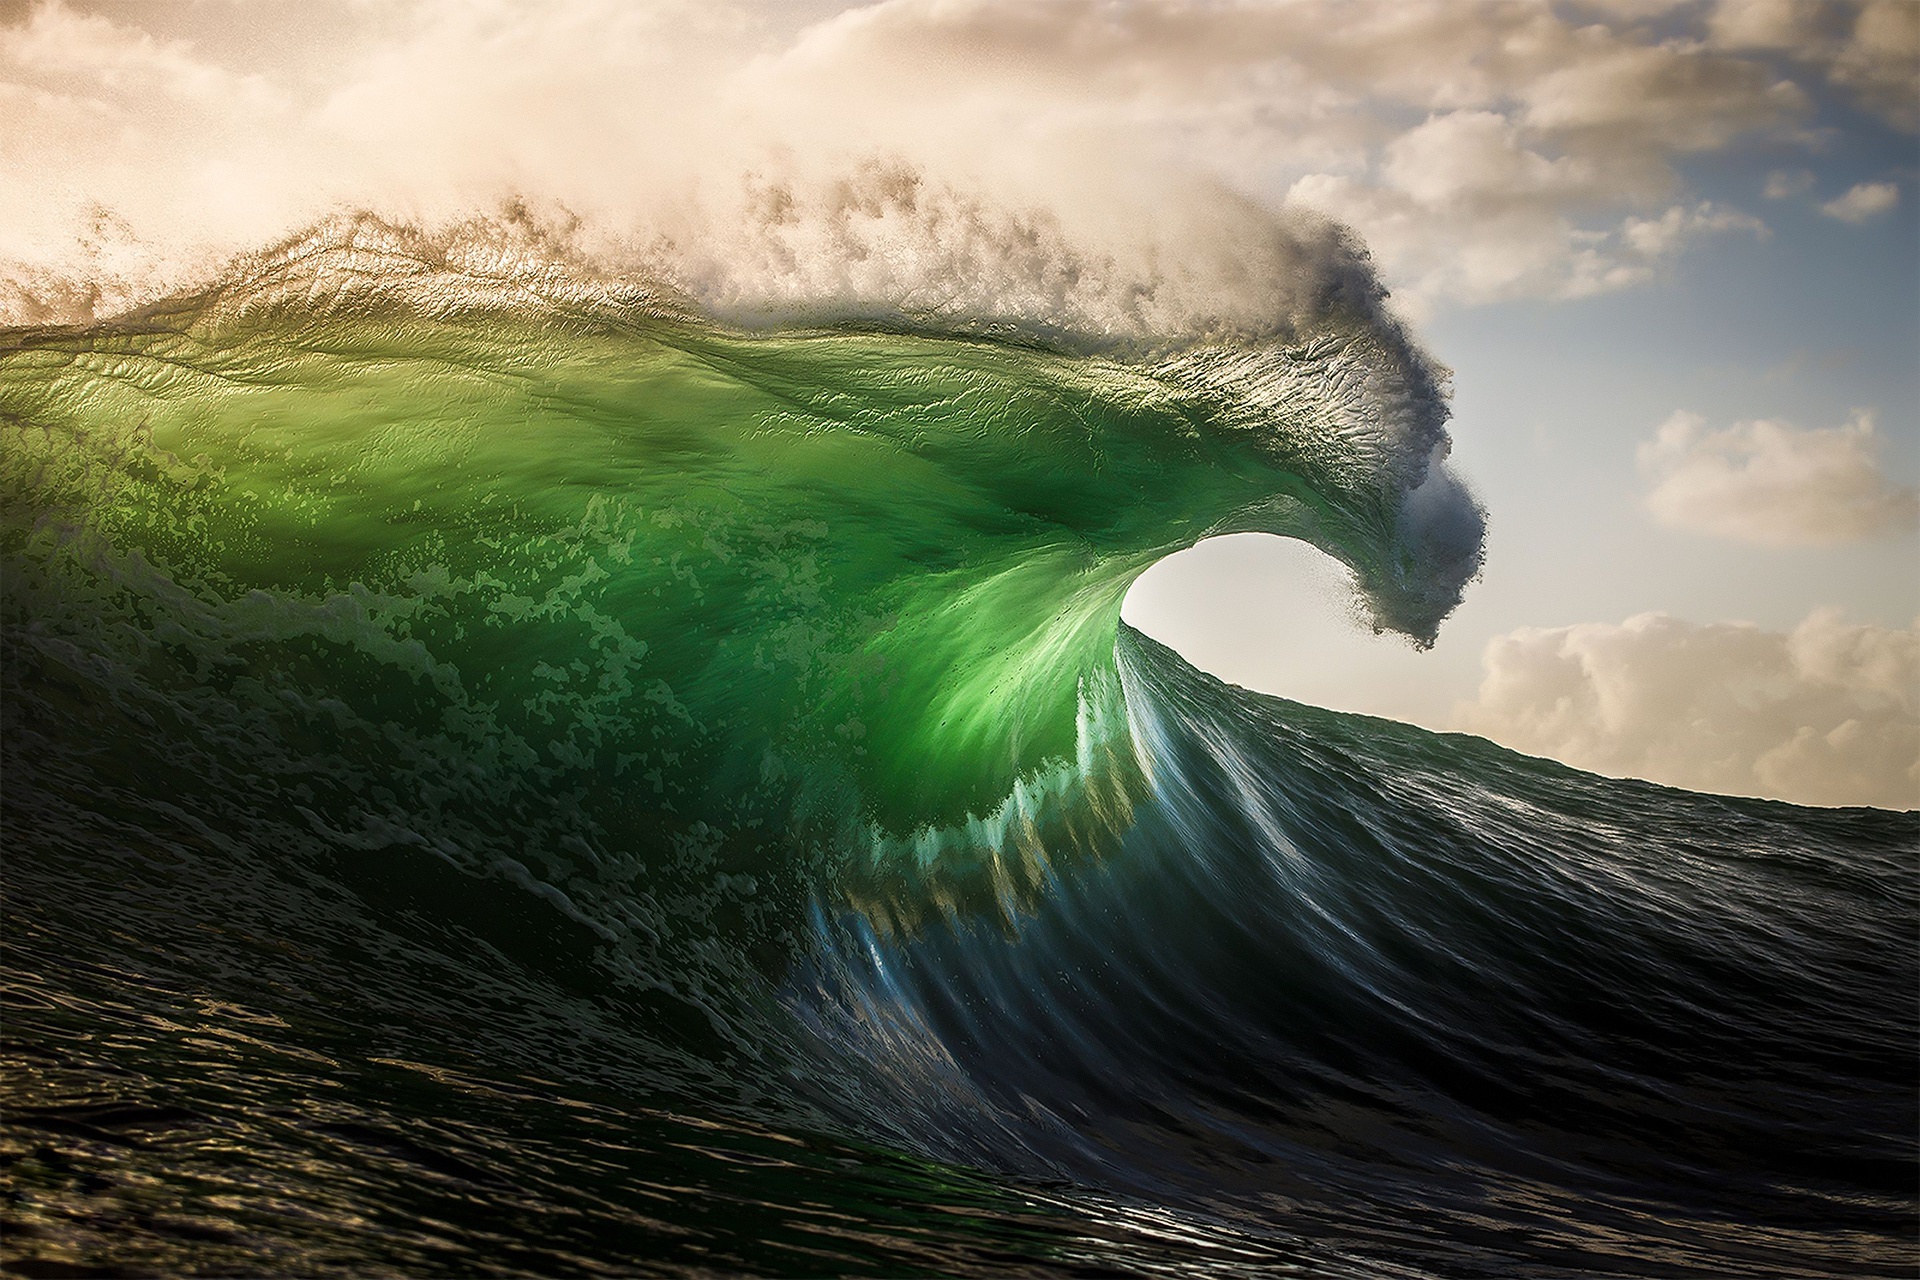 Hình nền sóng - Bức tranh tự nhiên cực kỳ đẹp, ấn tượng thực sự sẽ làm bạn mê mẩn. Quang cảnh nhiệt đới với những đợt sóng đầy sức mạnh, tạo ra một bức tranh sống động và bùng nổ.